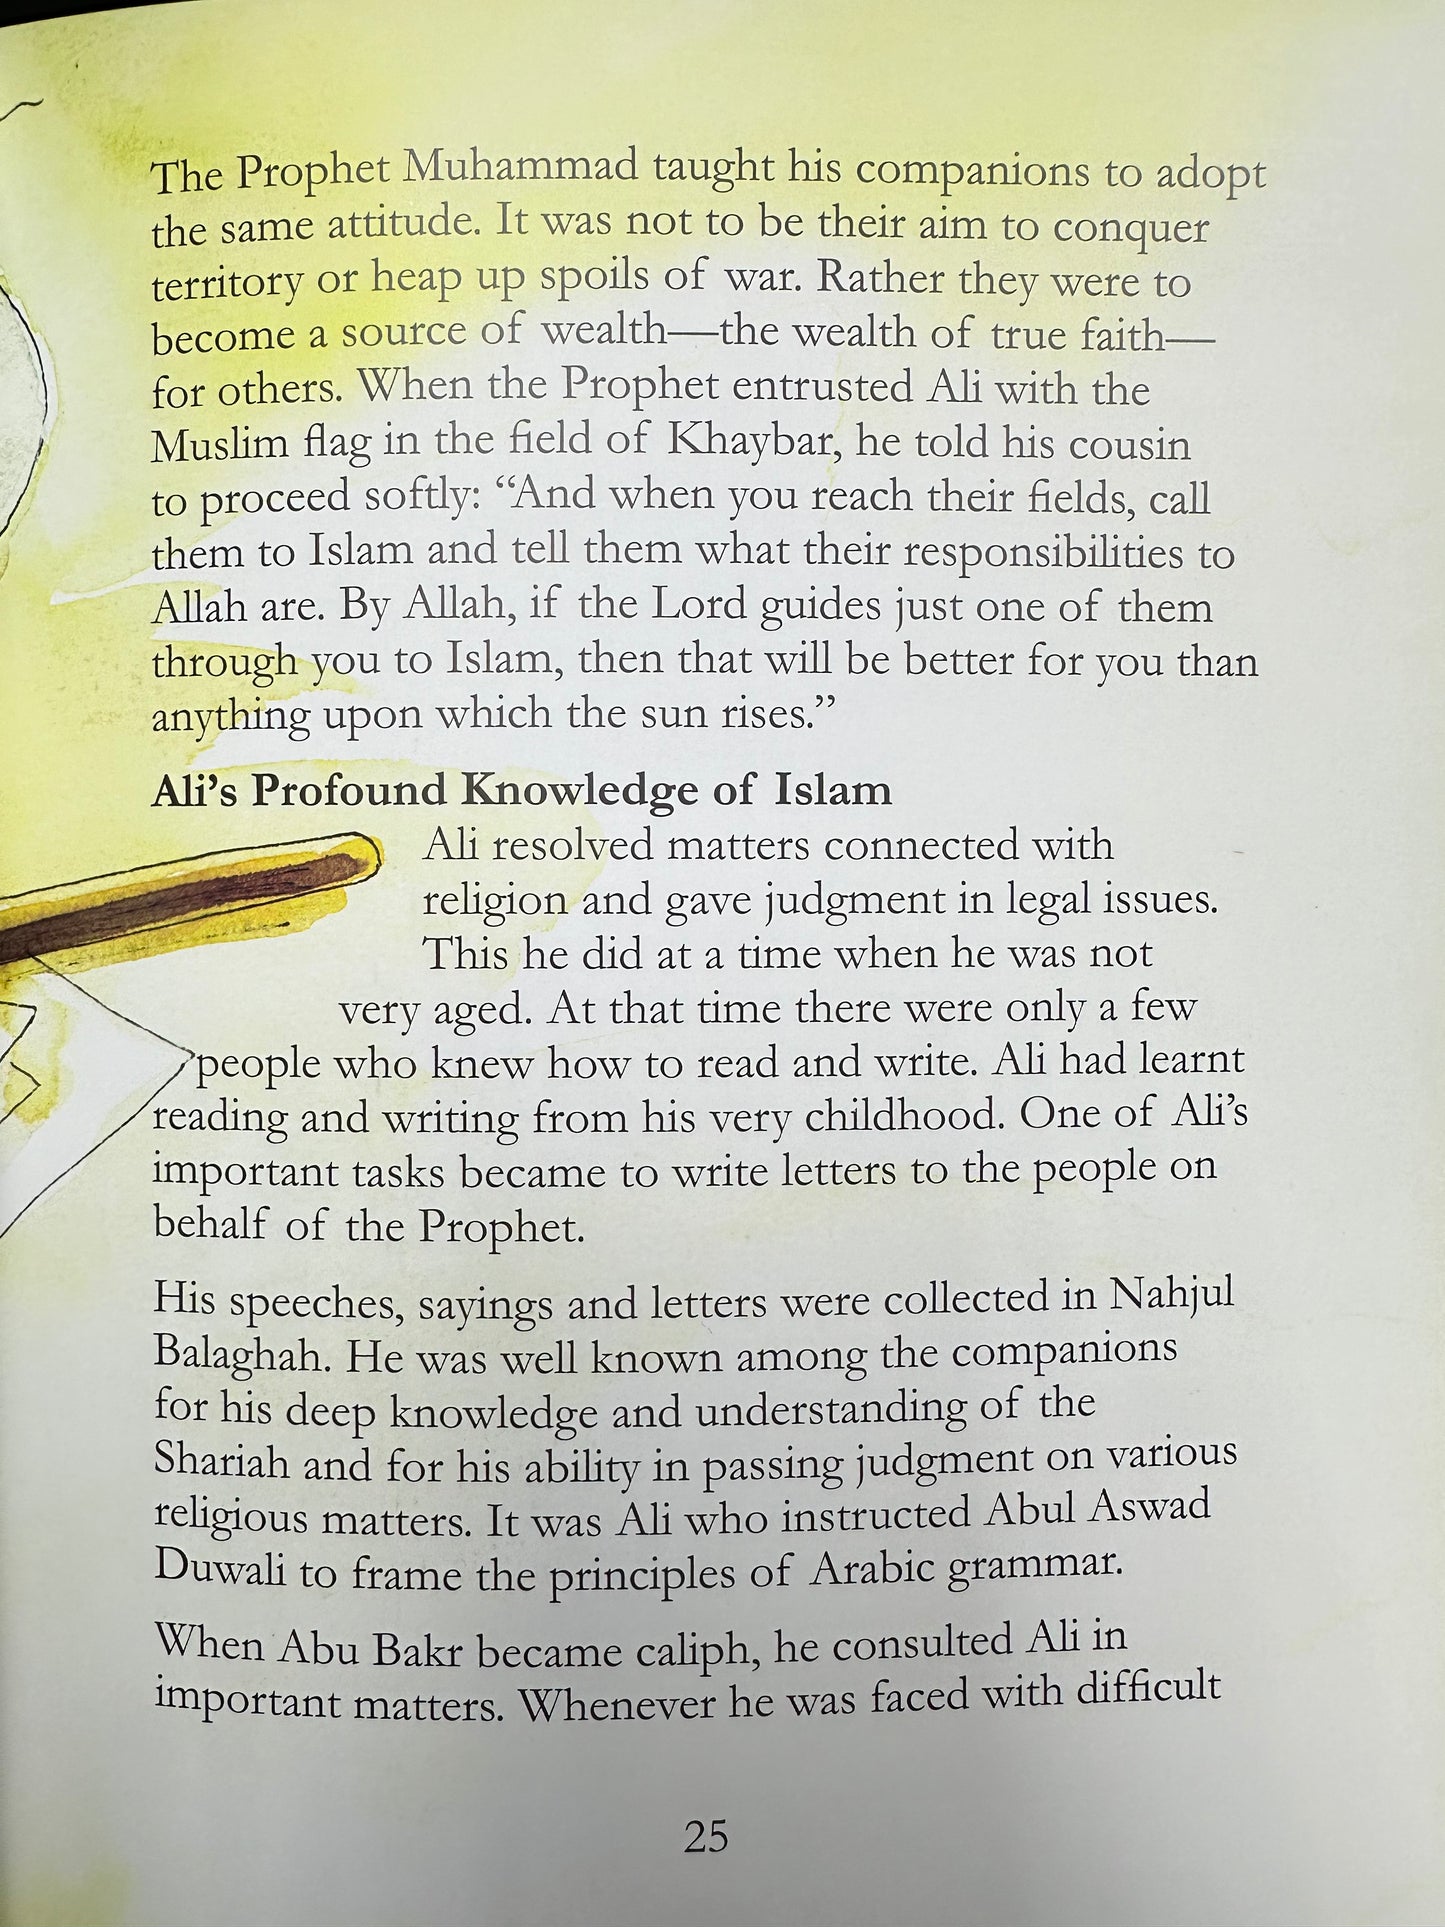 The Story of Ali Ibn Abi Talib